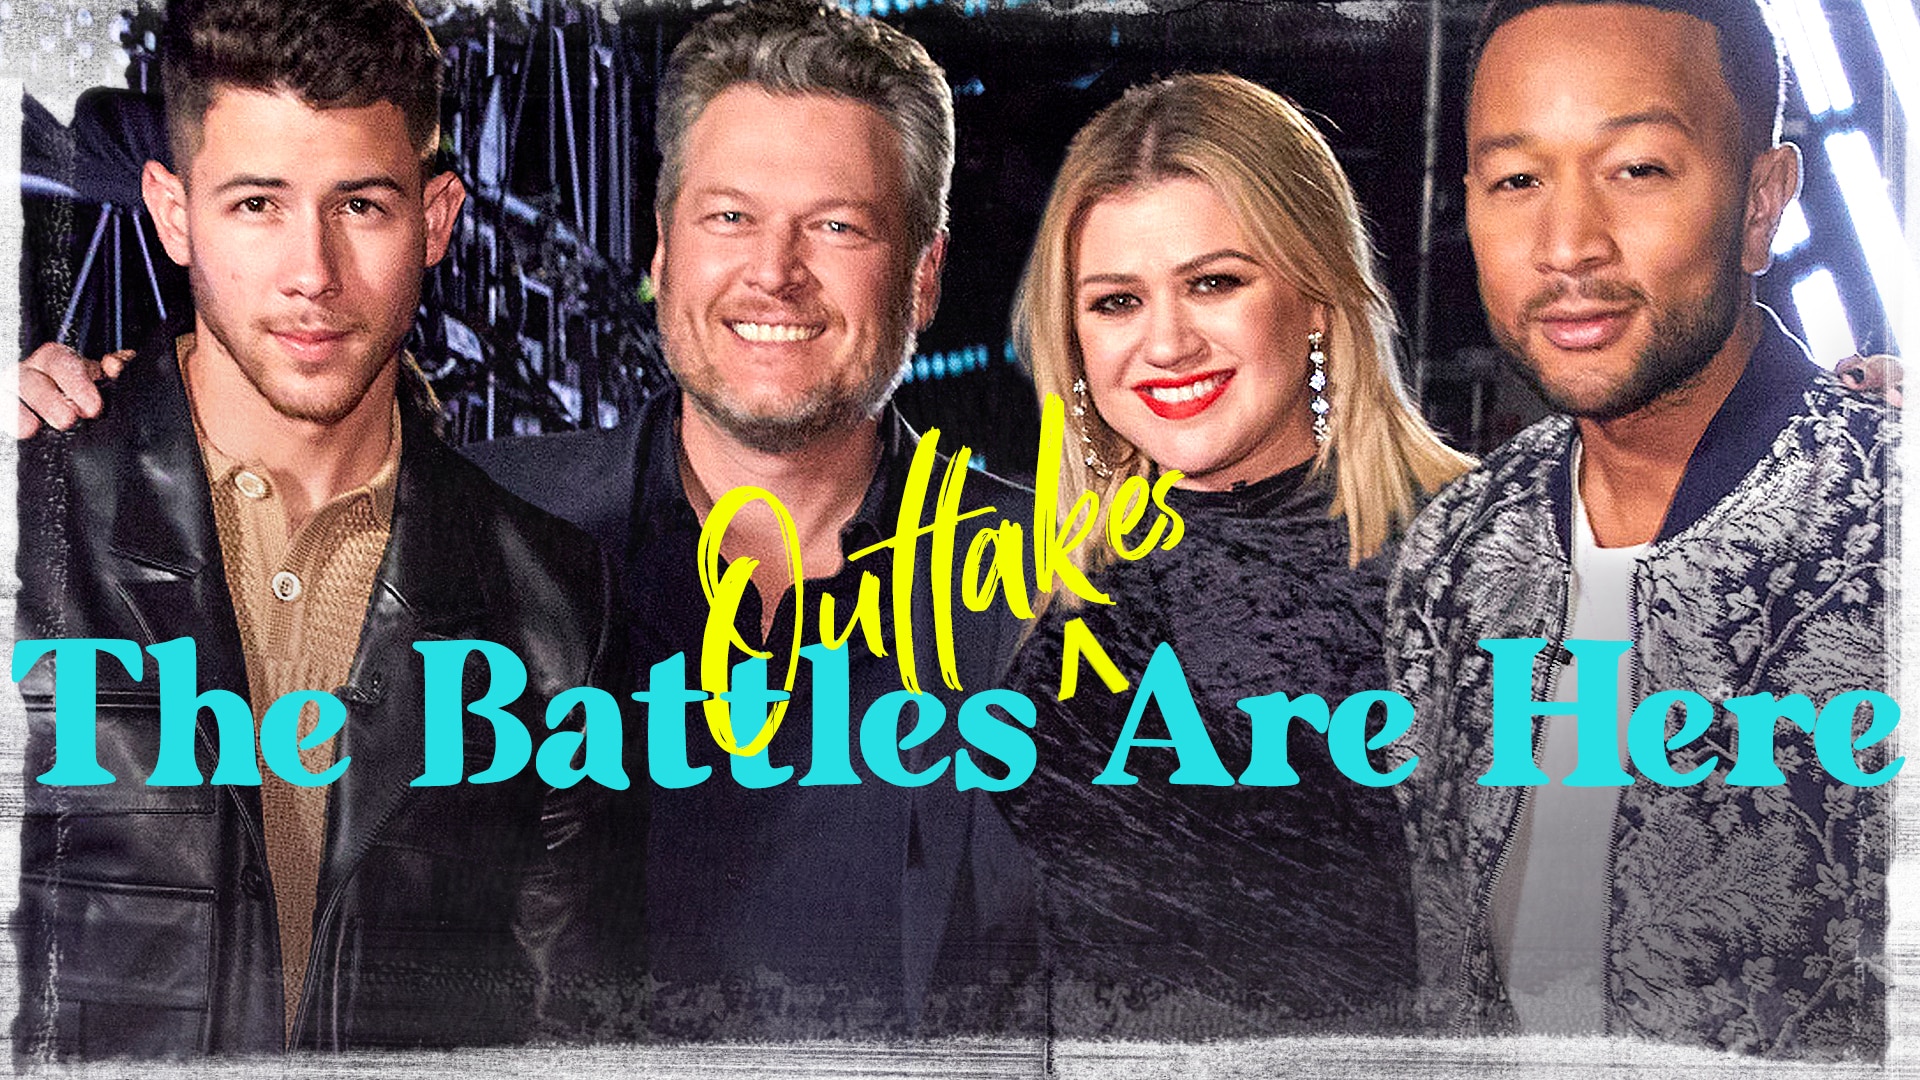 Watch The Voice Web Exclusive Battles! Battles! Battles! Battles